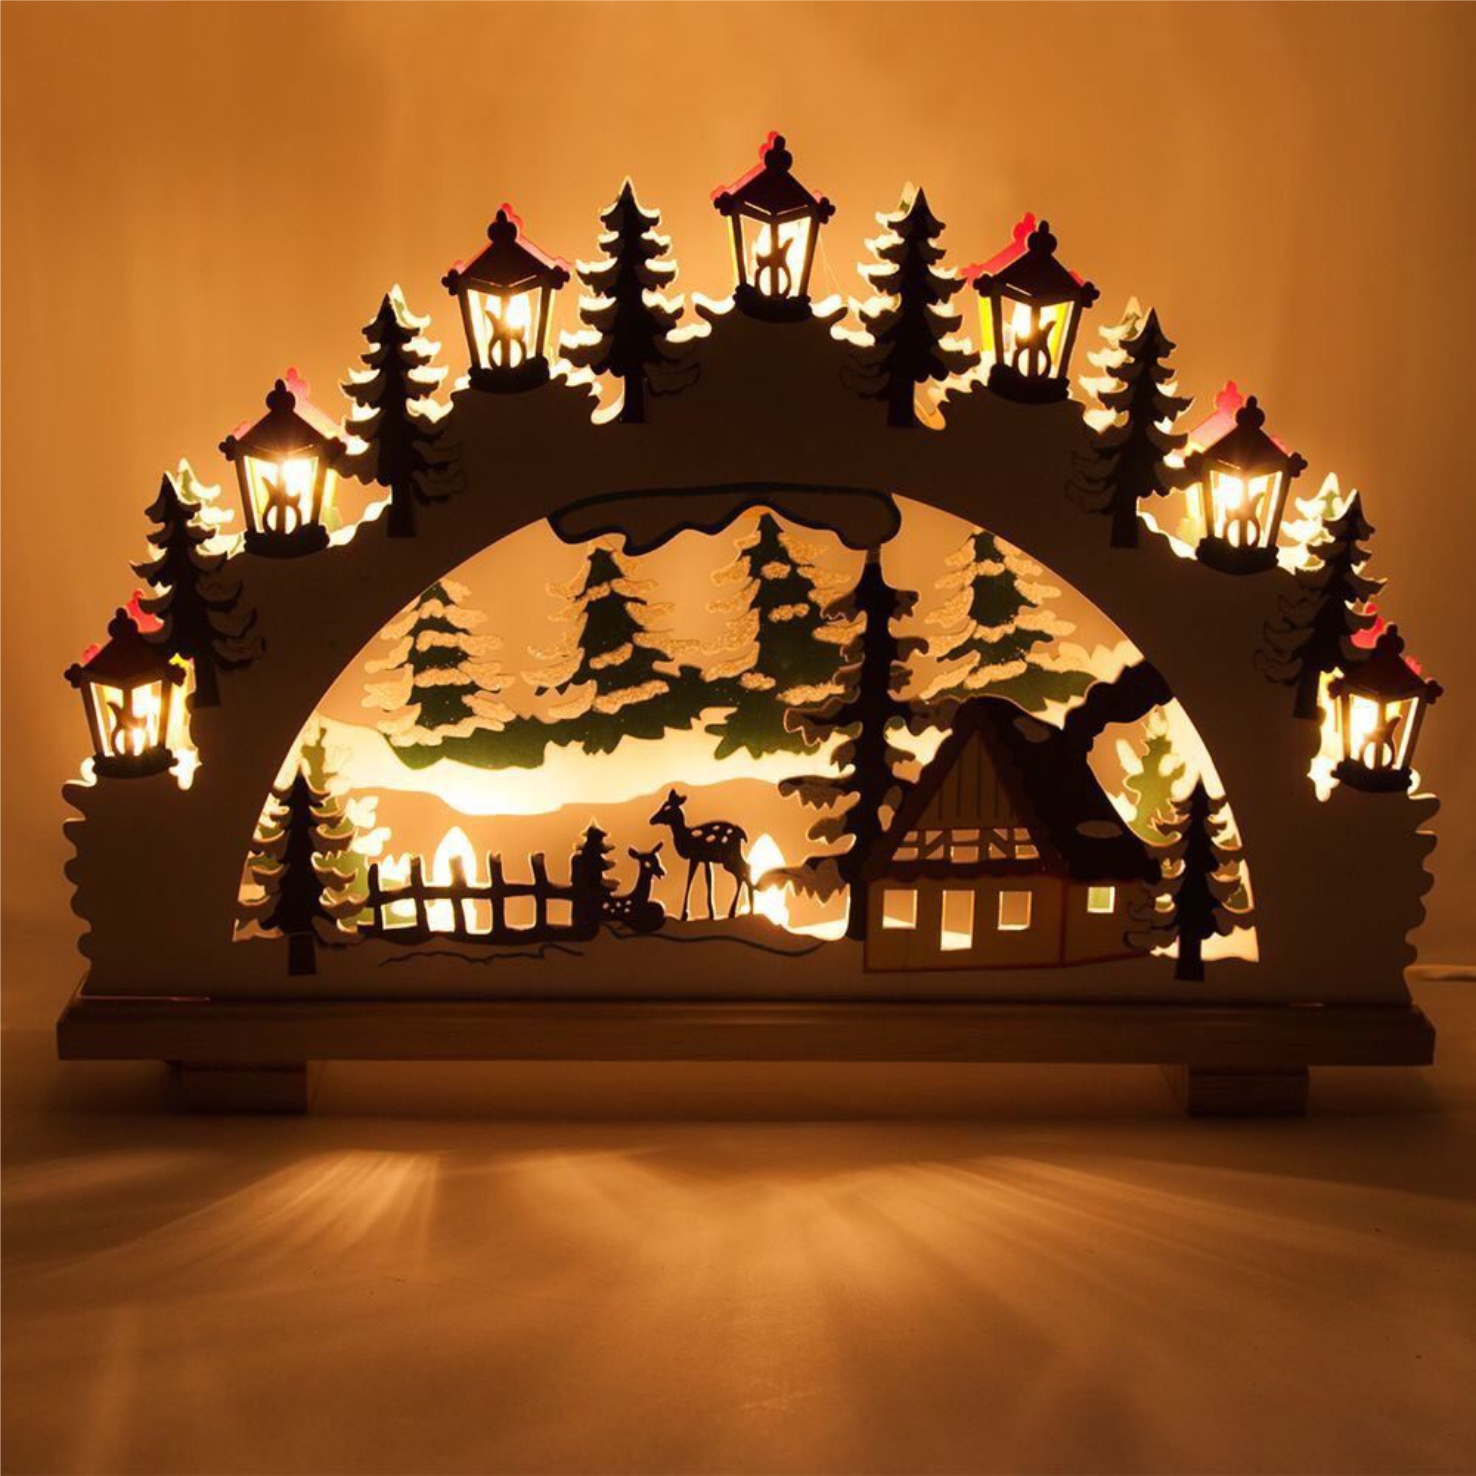 레이저 컷 크리스마스 장식품 램프 야경 나무 창 조명